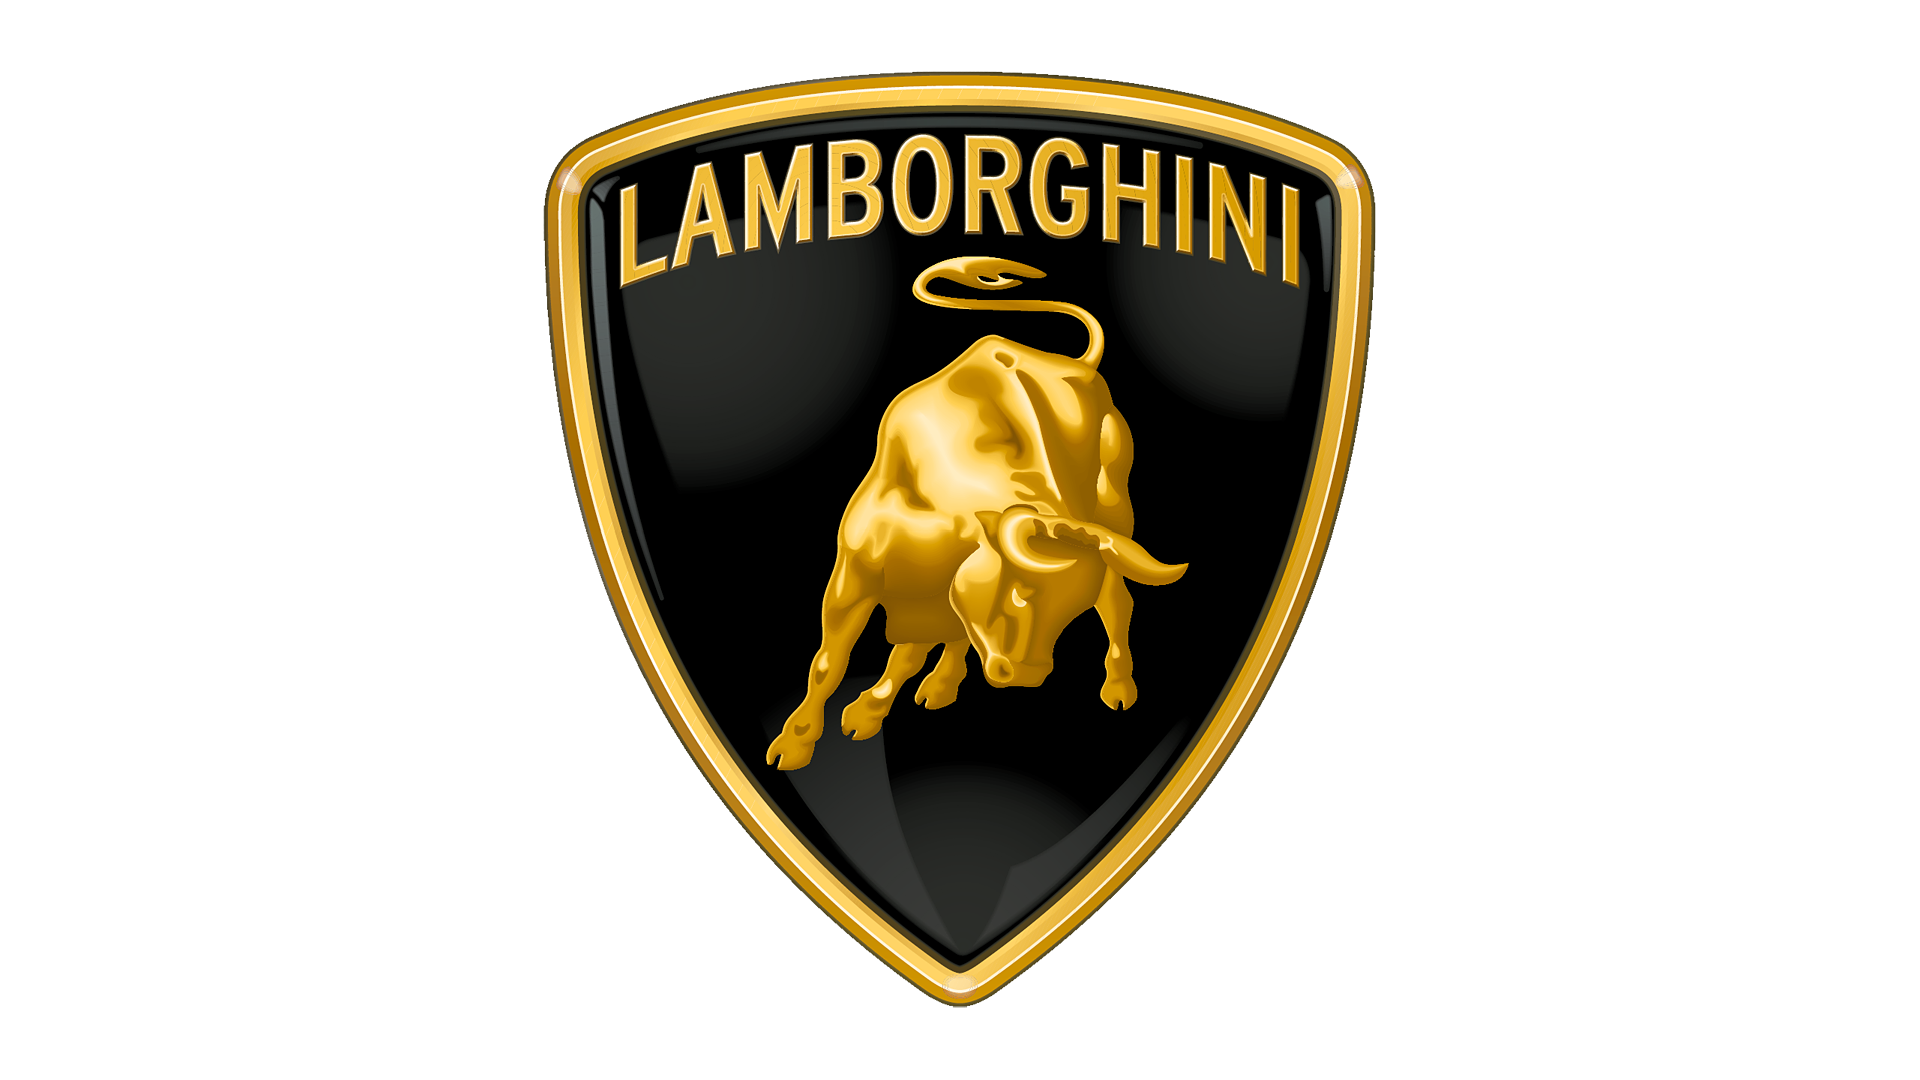 Lamborghini Diminished Value Appraiser